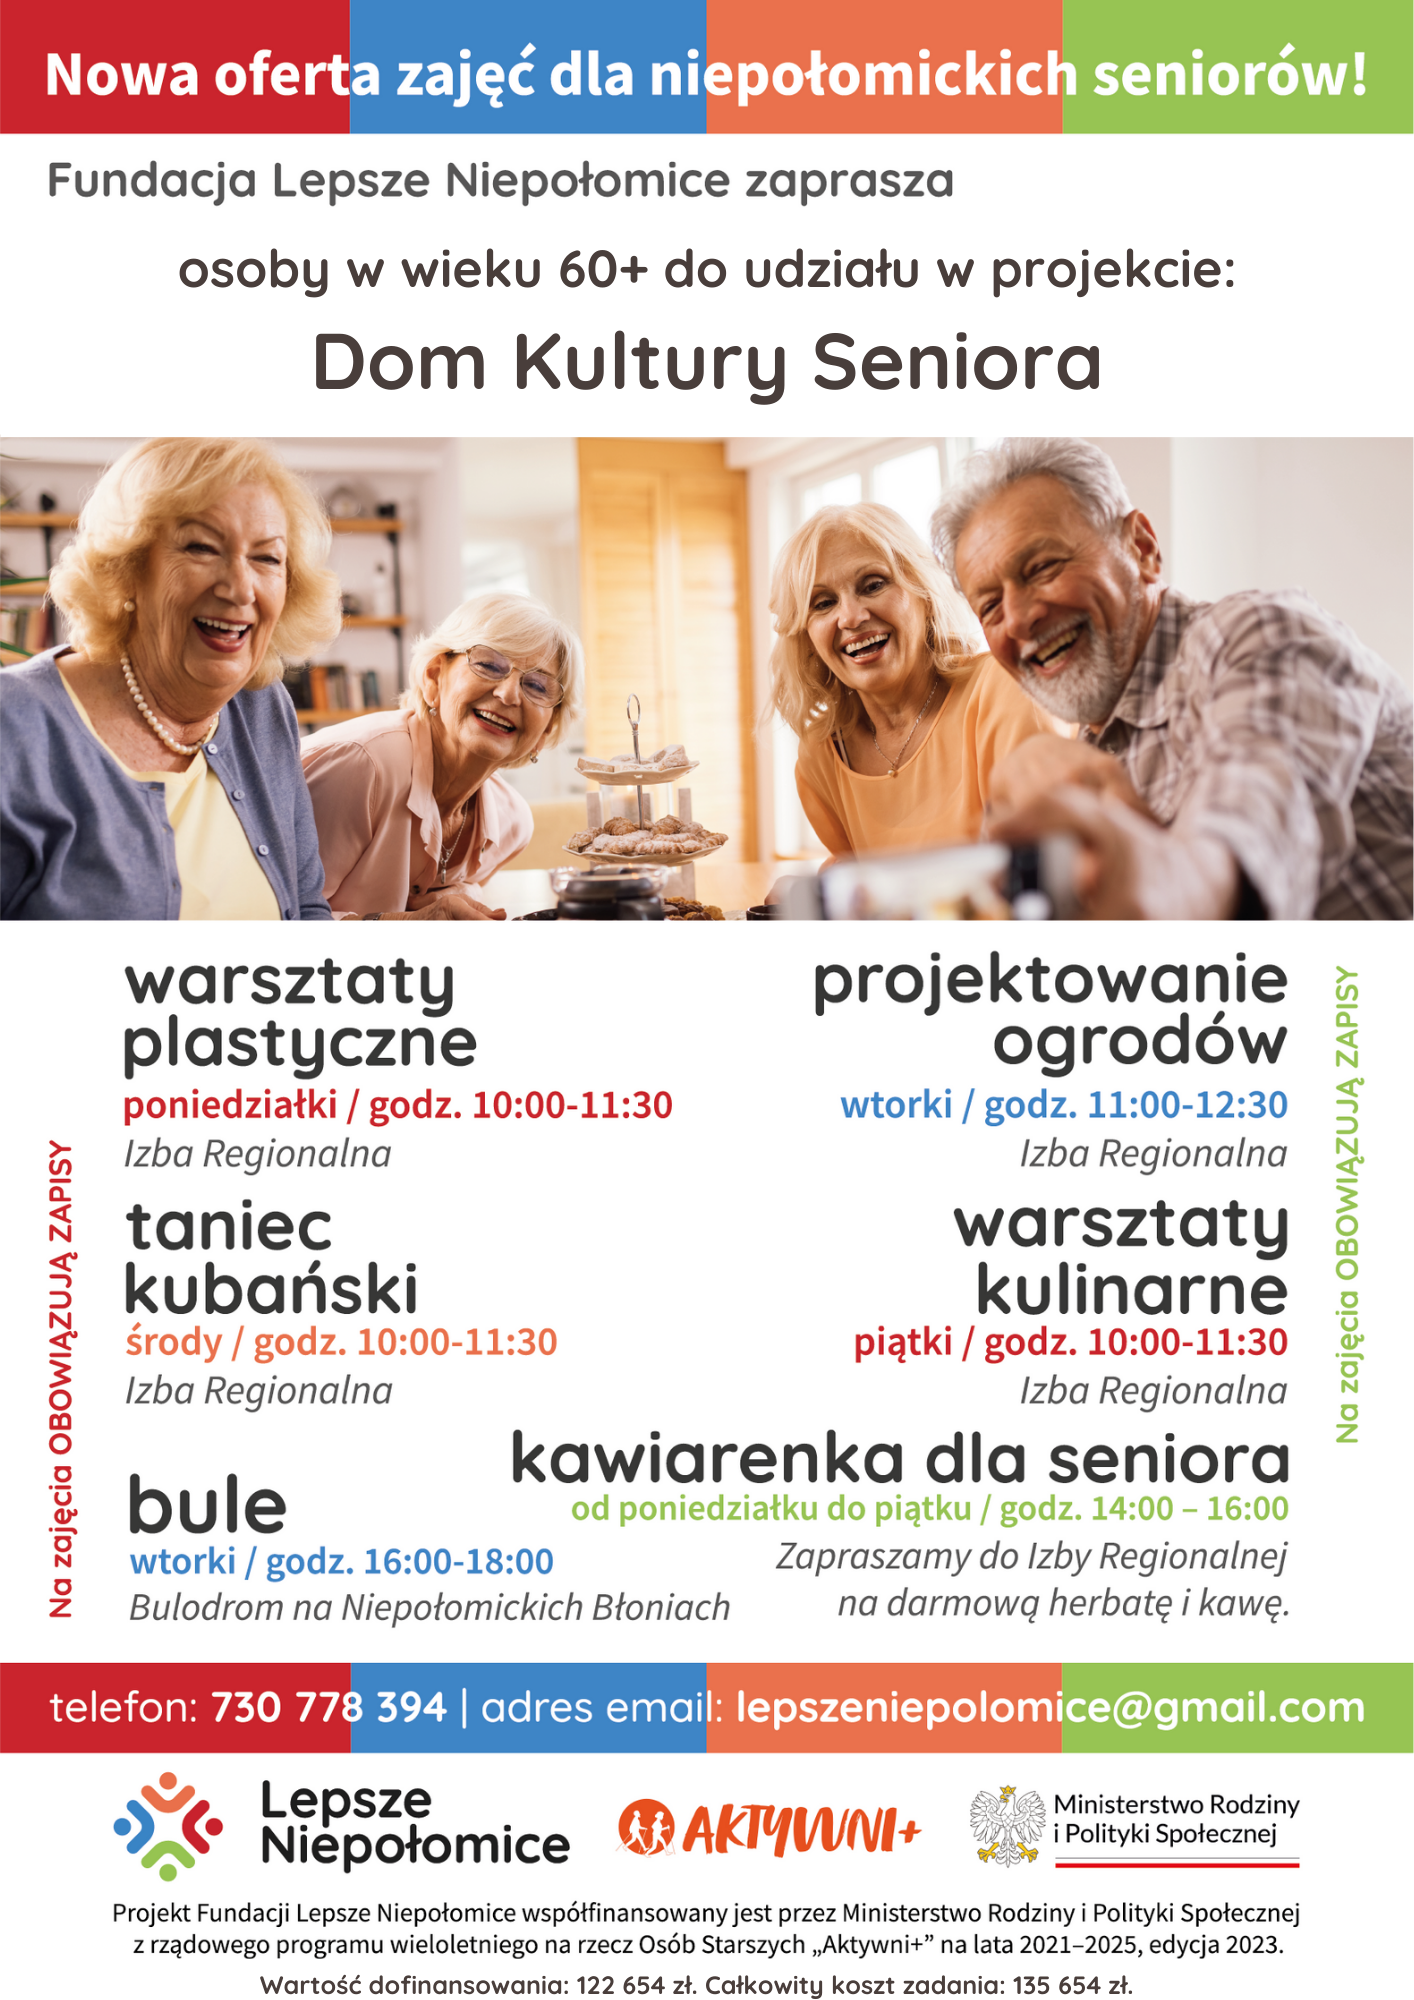 plakat informujący o zajęciach dla seniorów podane są rodzaje i terminy zajęć